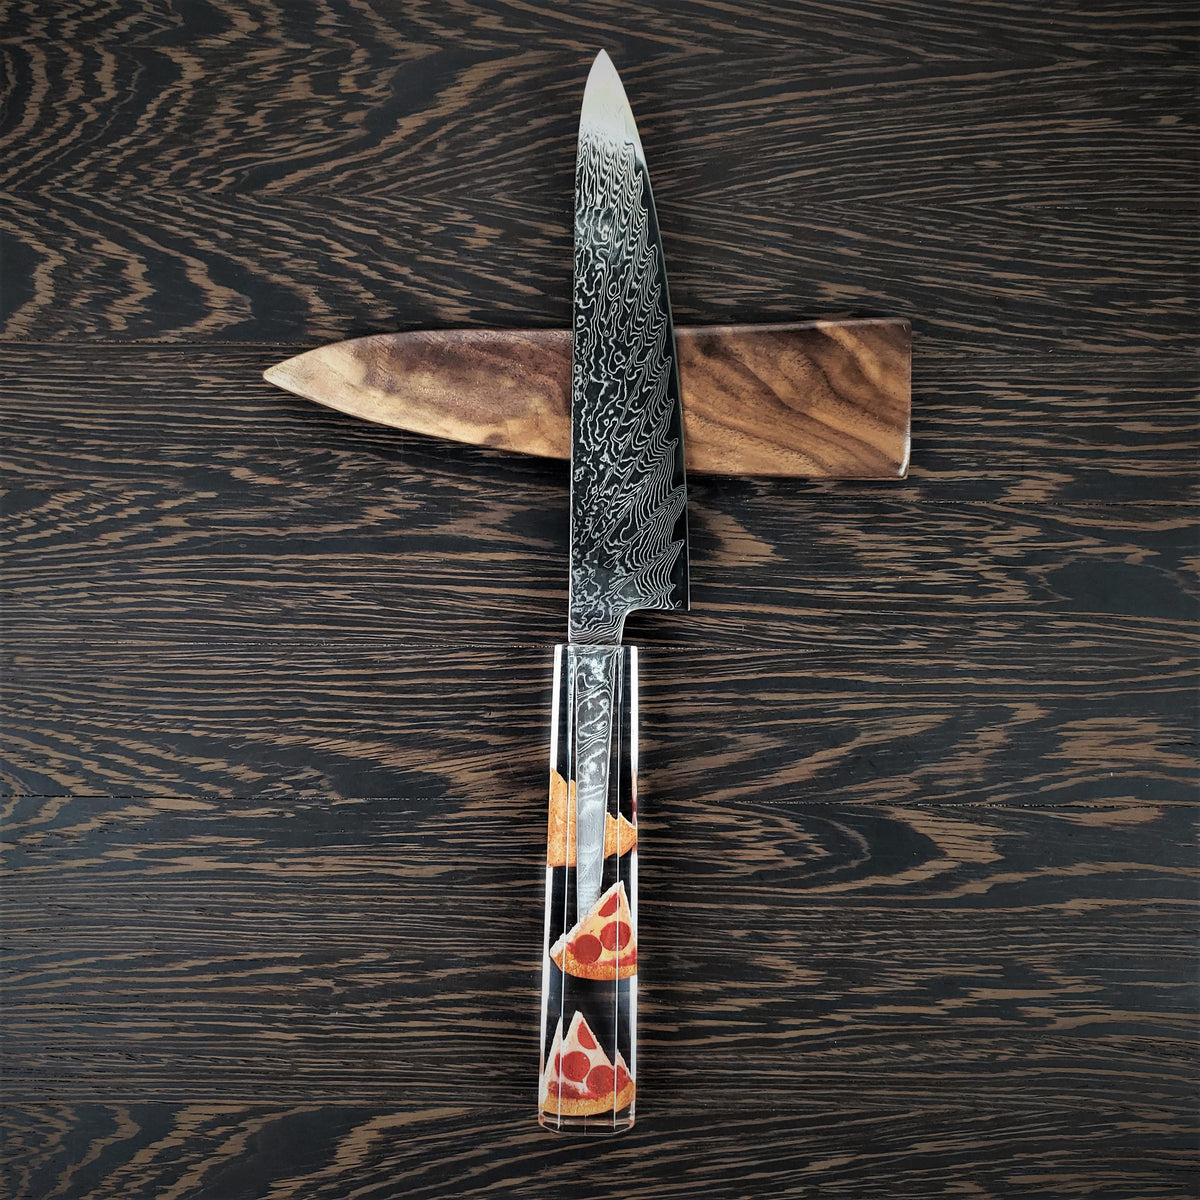 In Crust We Trust - 6in (150mm) Damascus Petty Culinary Knife